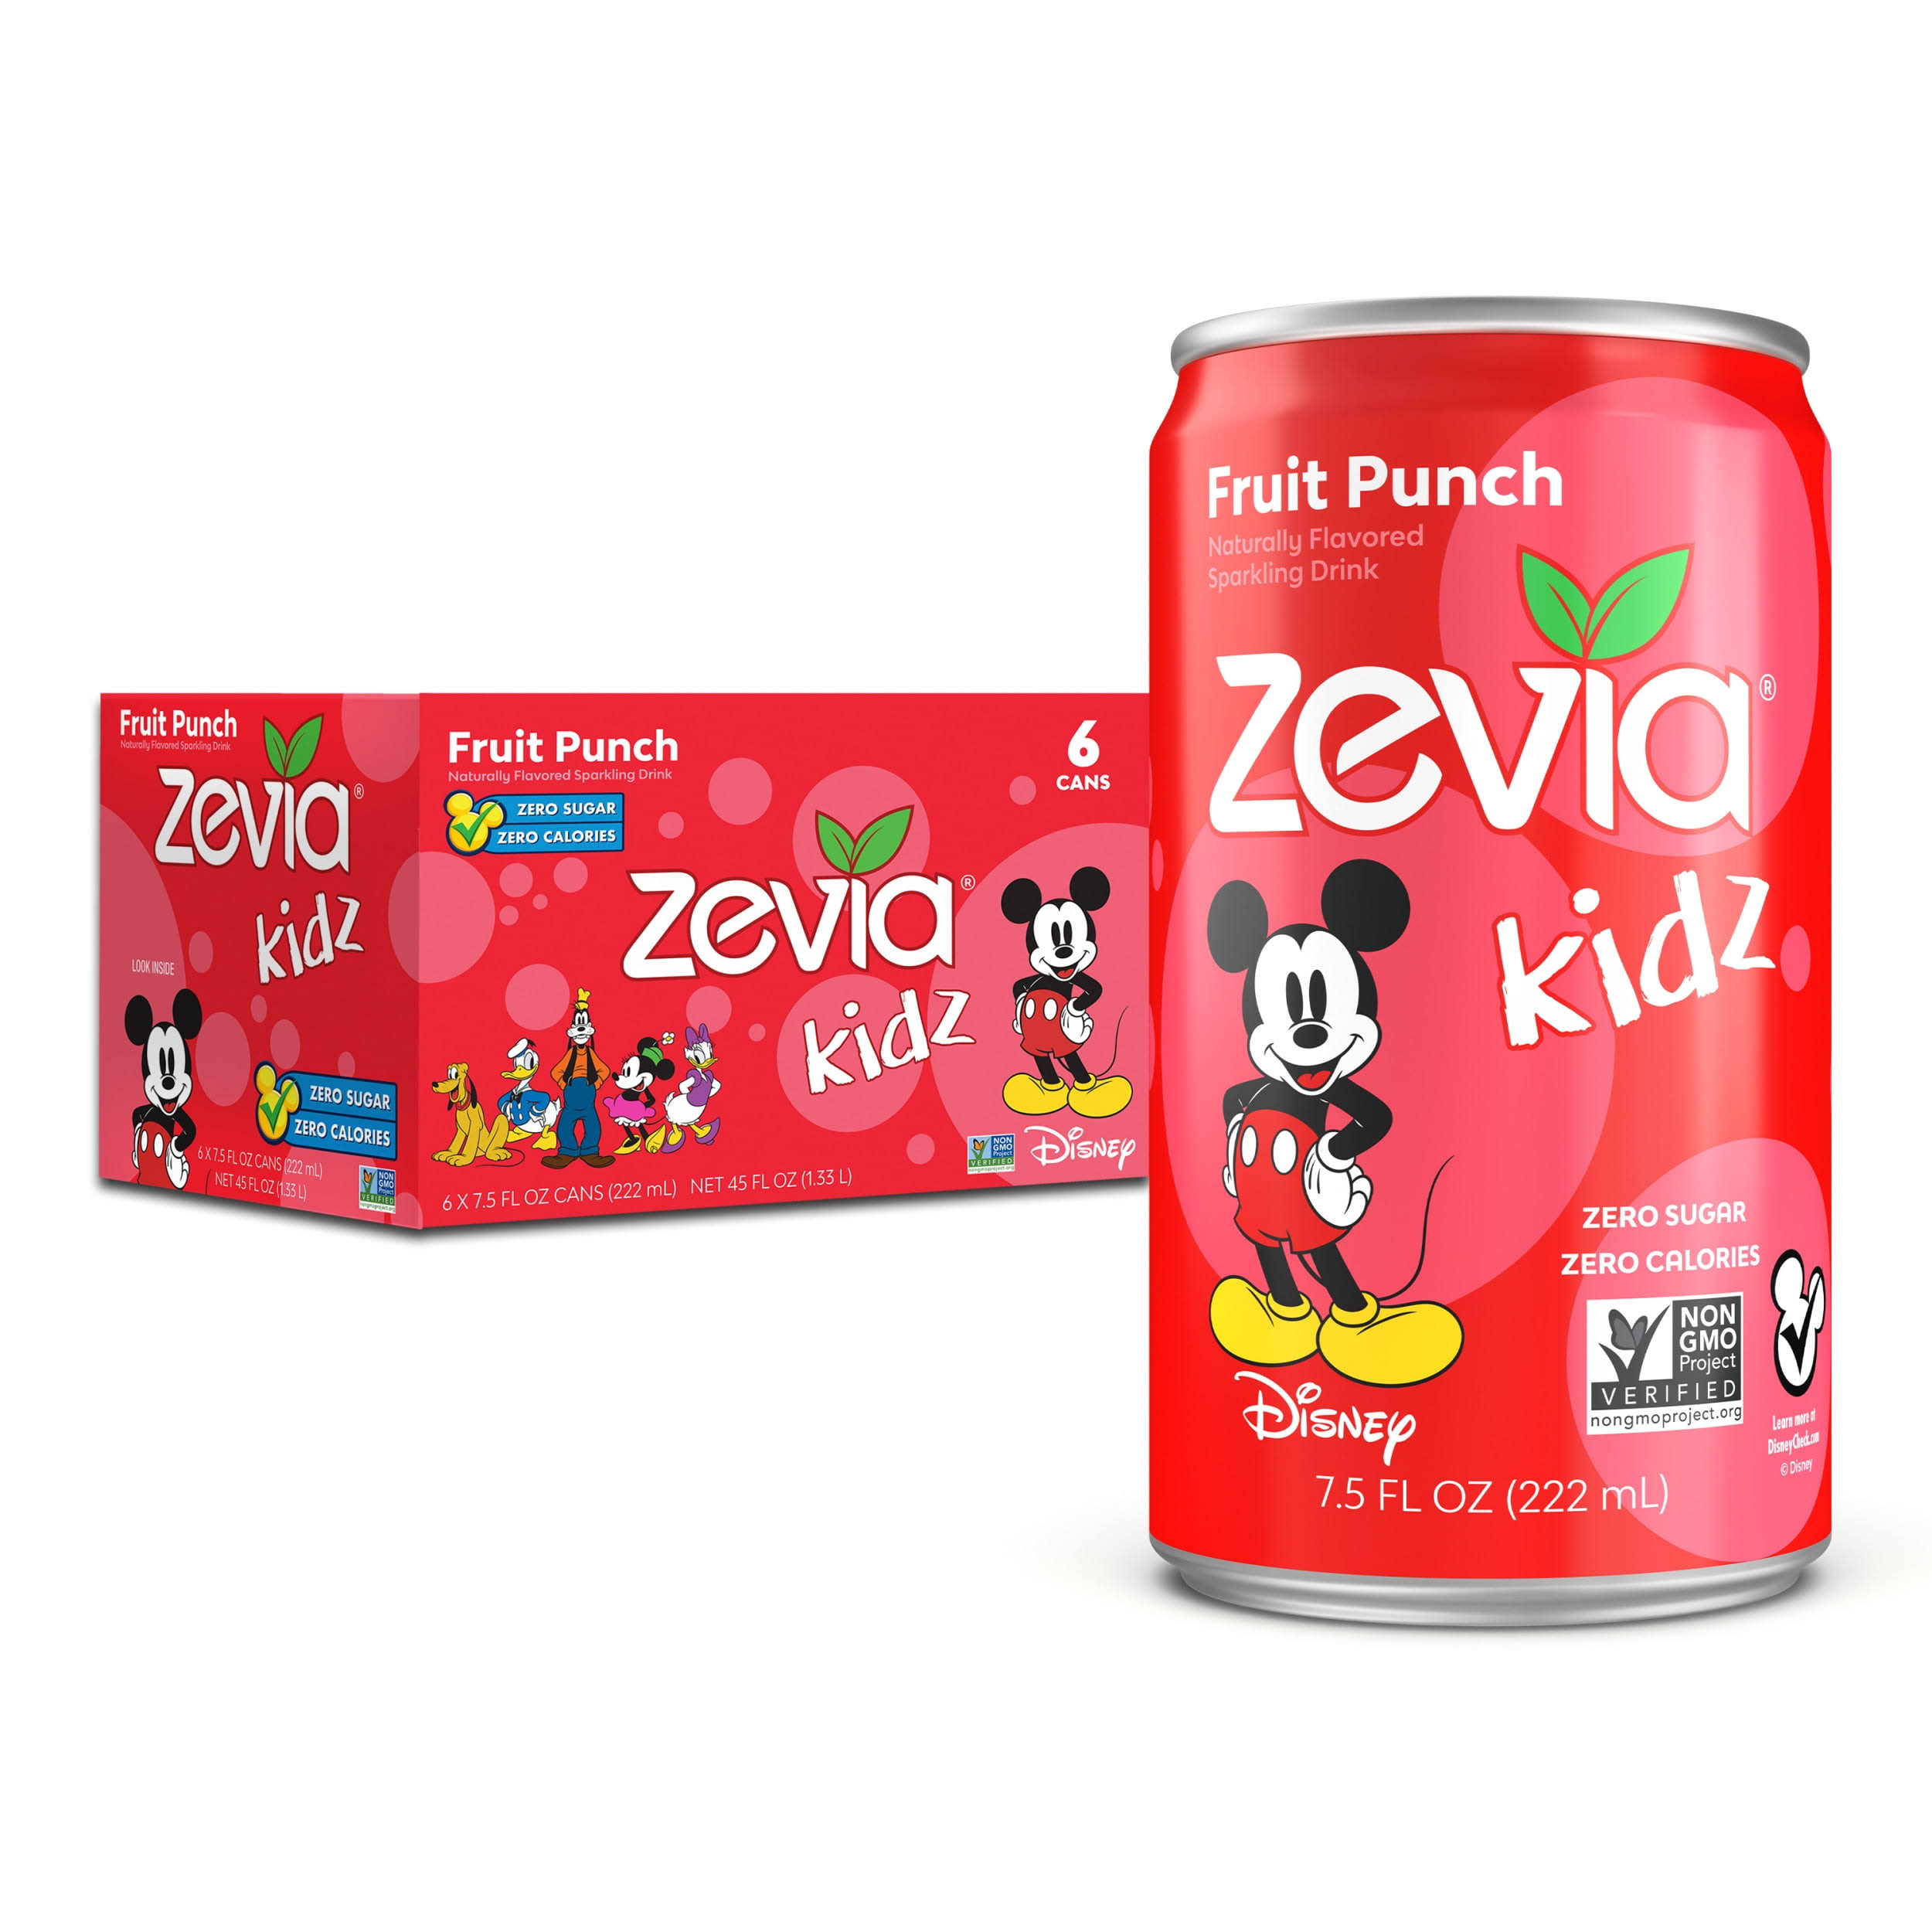 Zevia Kidz Sparkling Drink, Fruit Punch - 6 pack, 7.5 fl oz cans